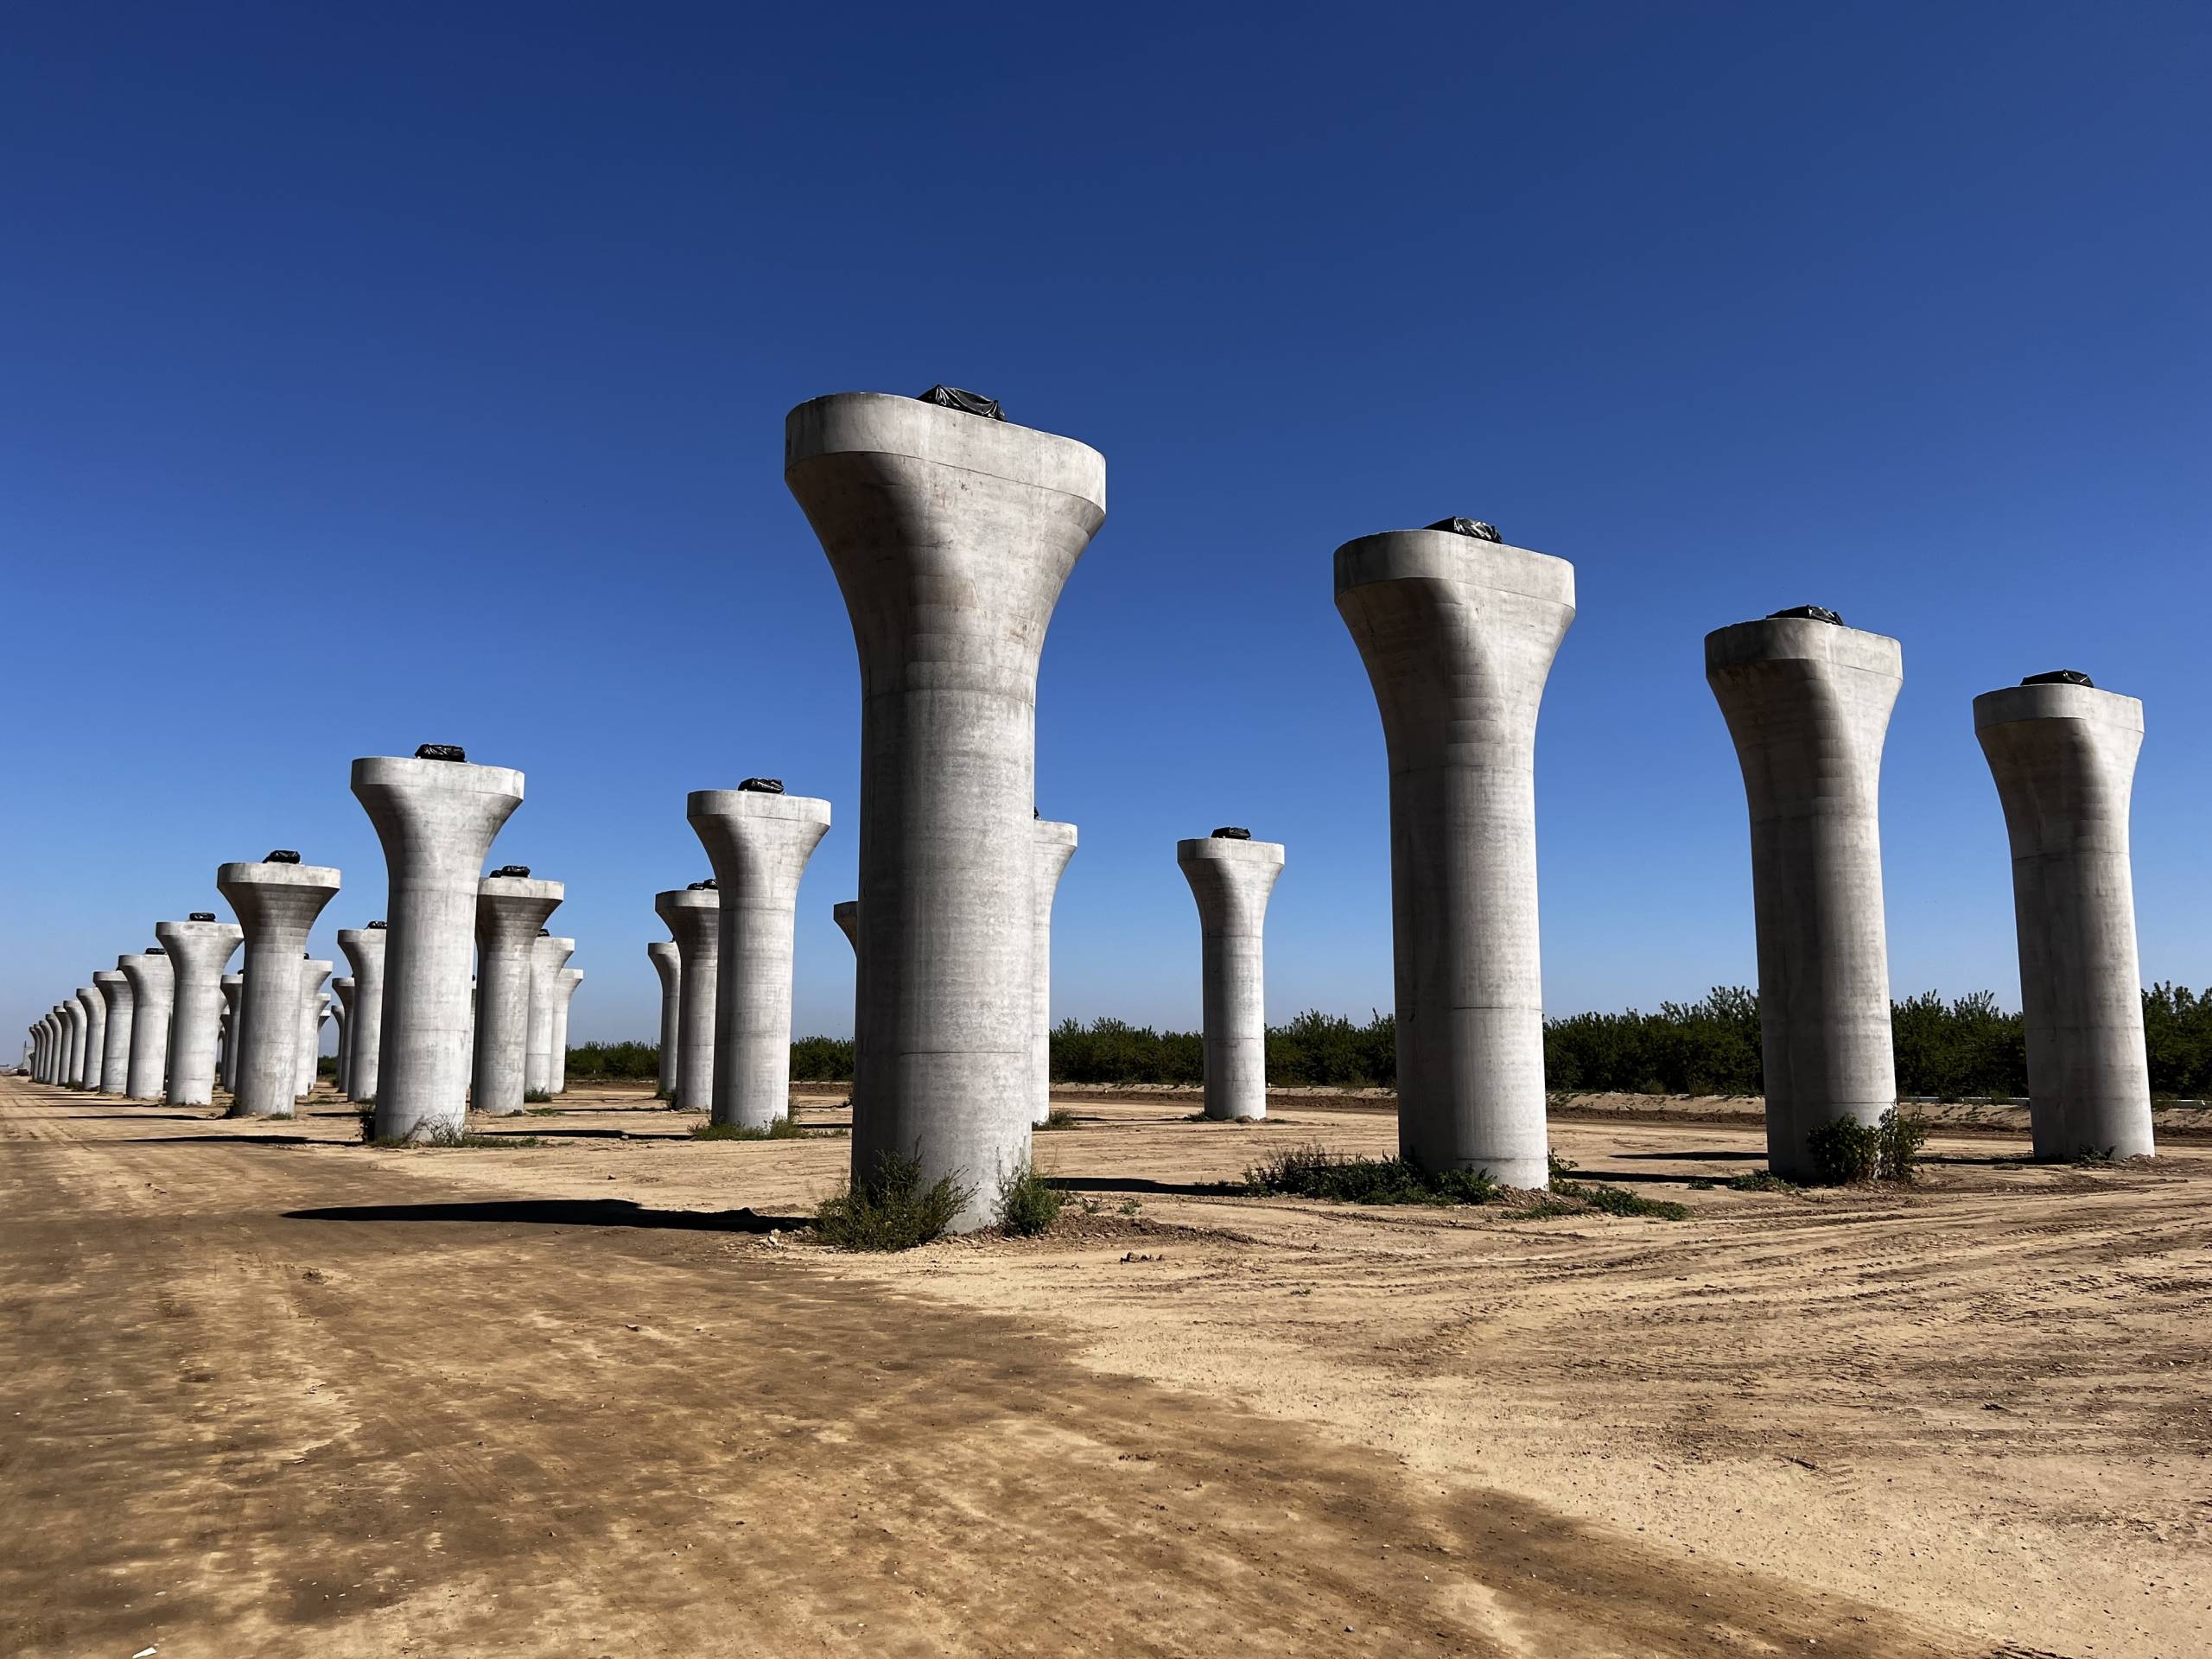 A long line of concrete columns.